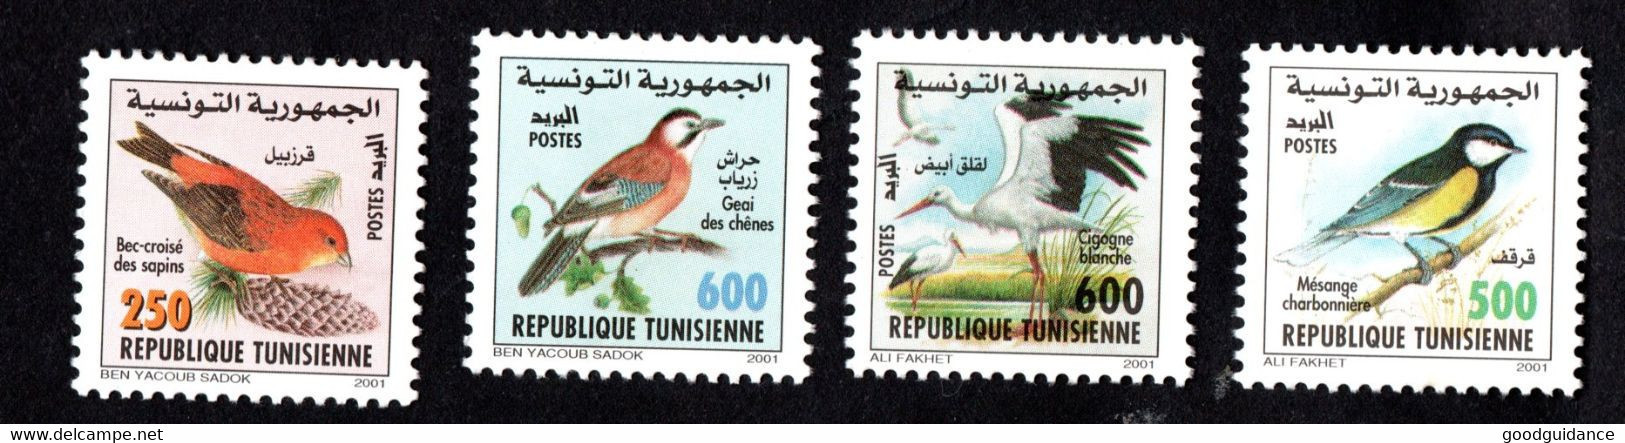 2001-Tunisie-Oiseaux De Tunisie-Cigogne Blanche-Bec-croisé– Geai Des Chênes-Mésange-Charbonnière– Série Compl.4v.MNH** - Moineaux